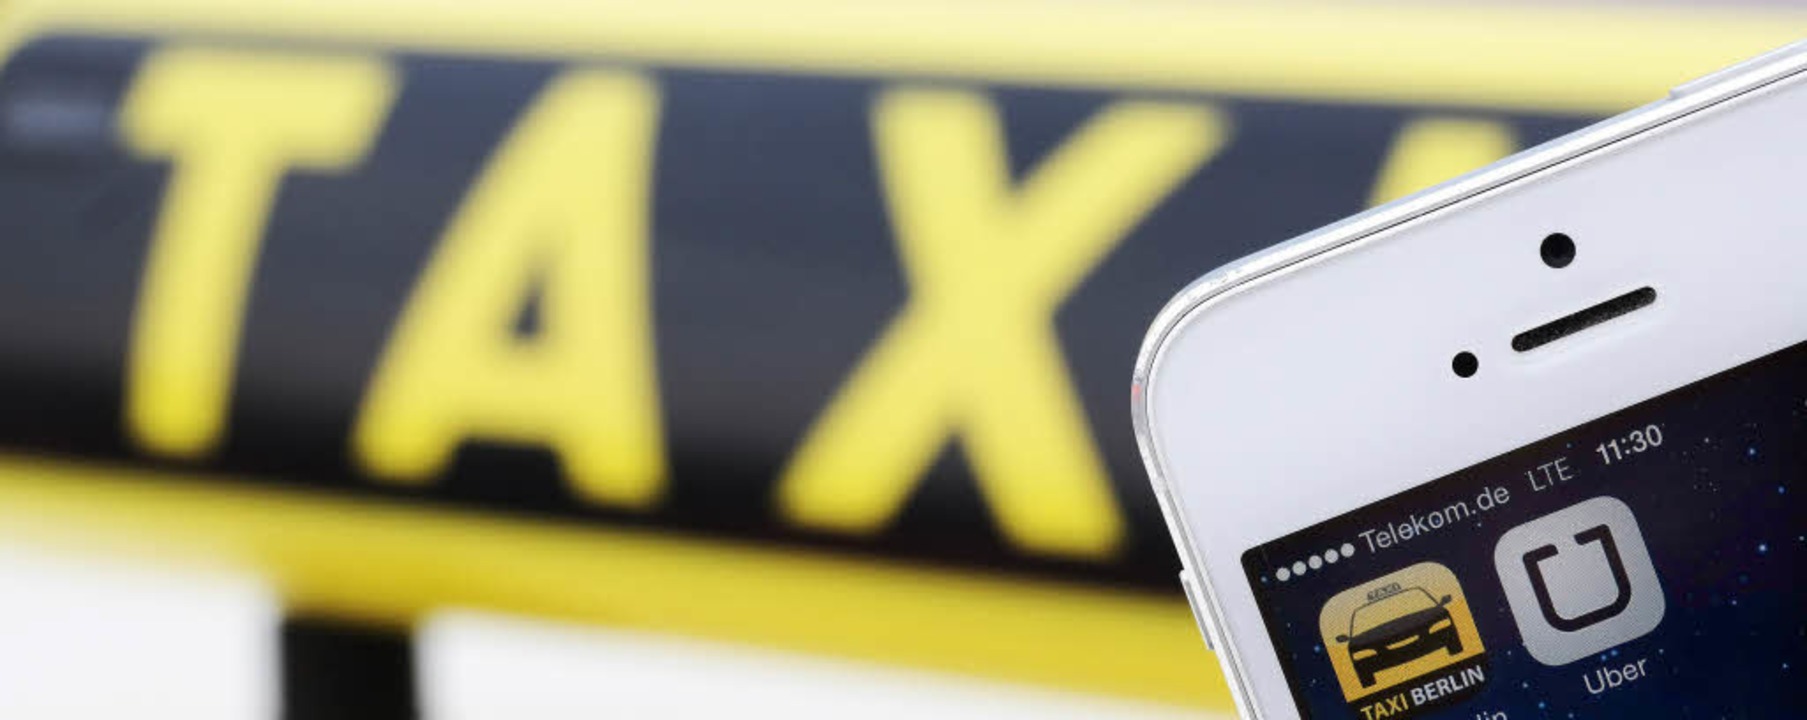 Stößt den Taxifahrern übel auf: die App des Fahrdienstes Uber.   | Foto: DPA